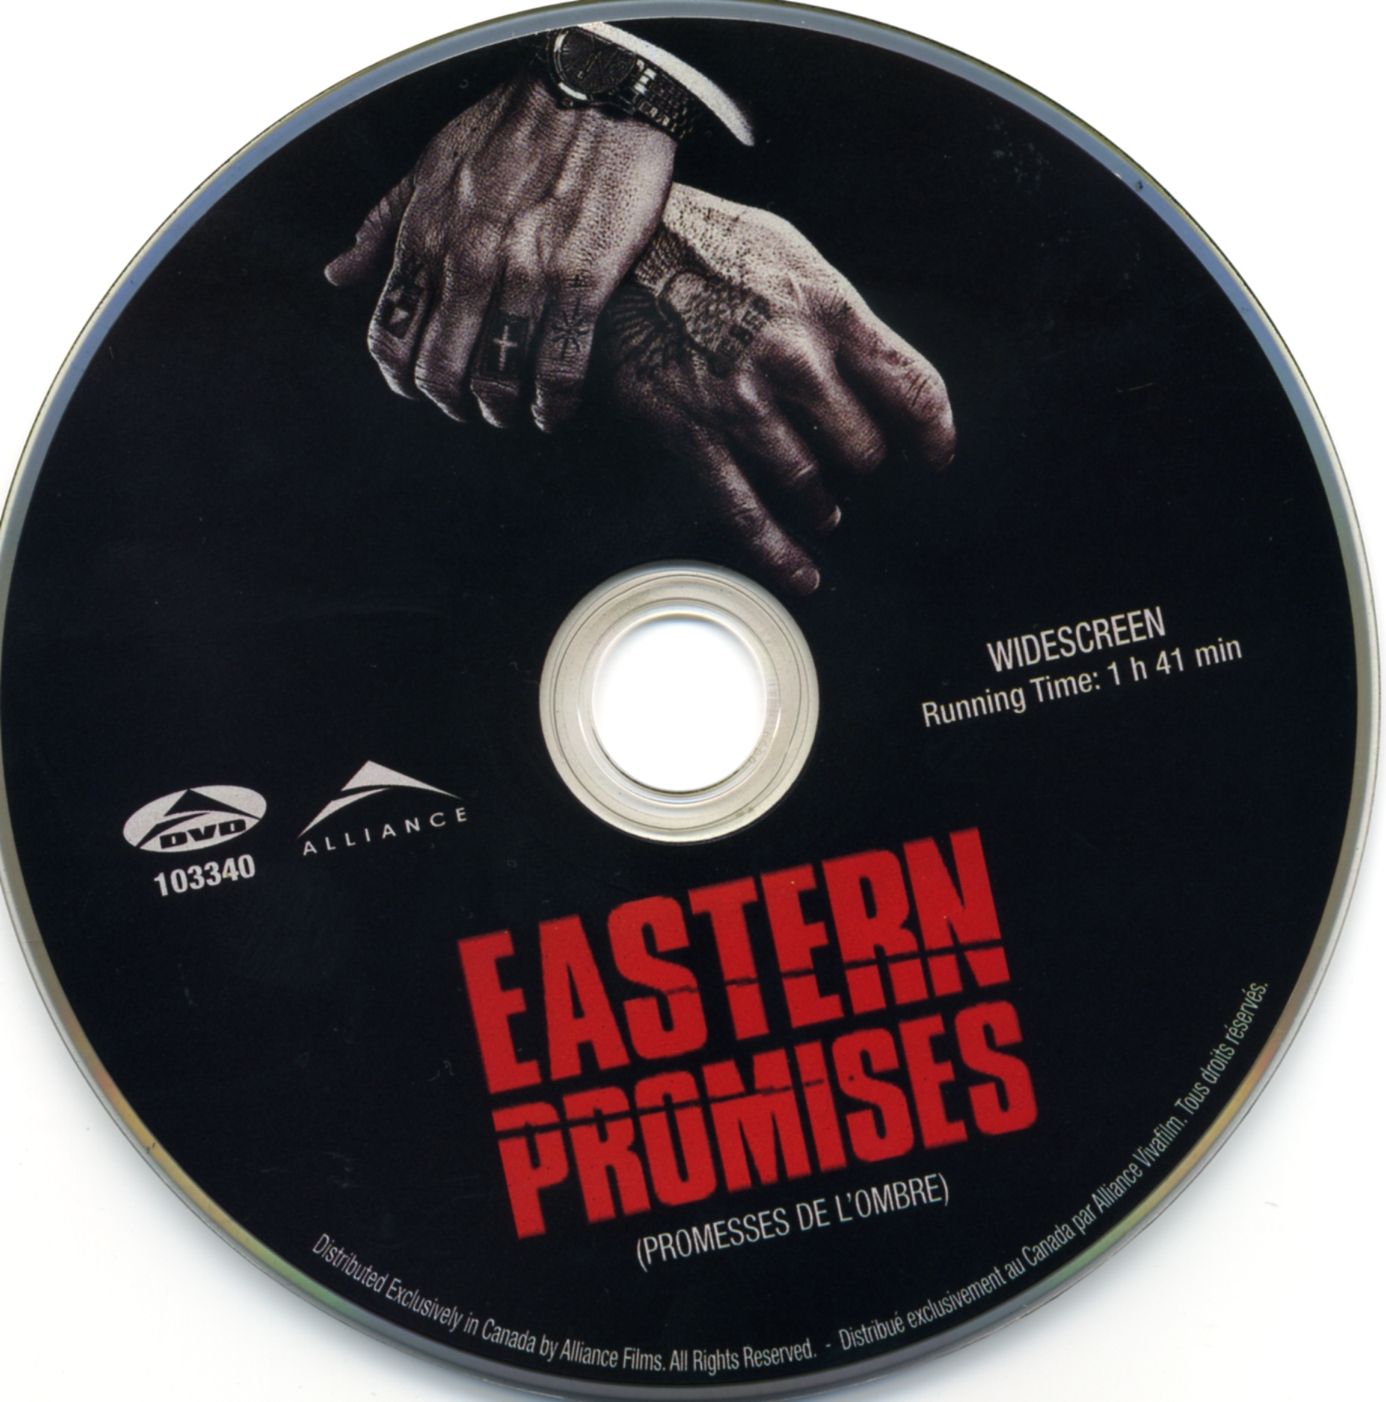 Eastern promises - Les promesses de l